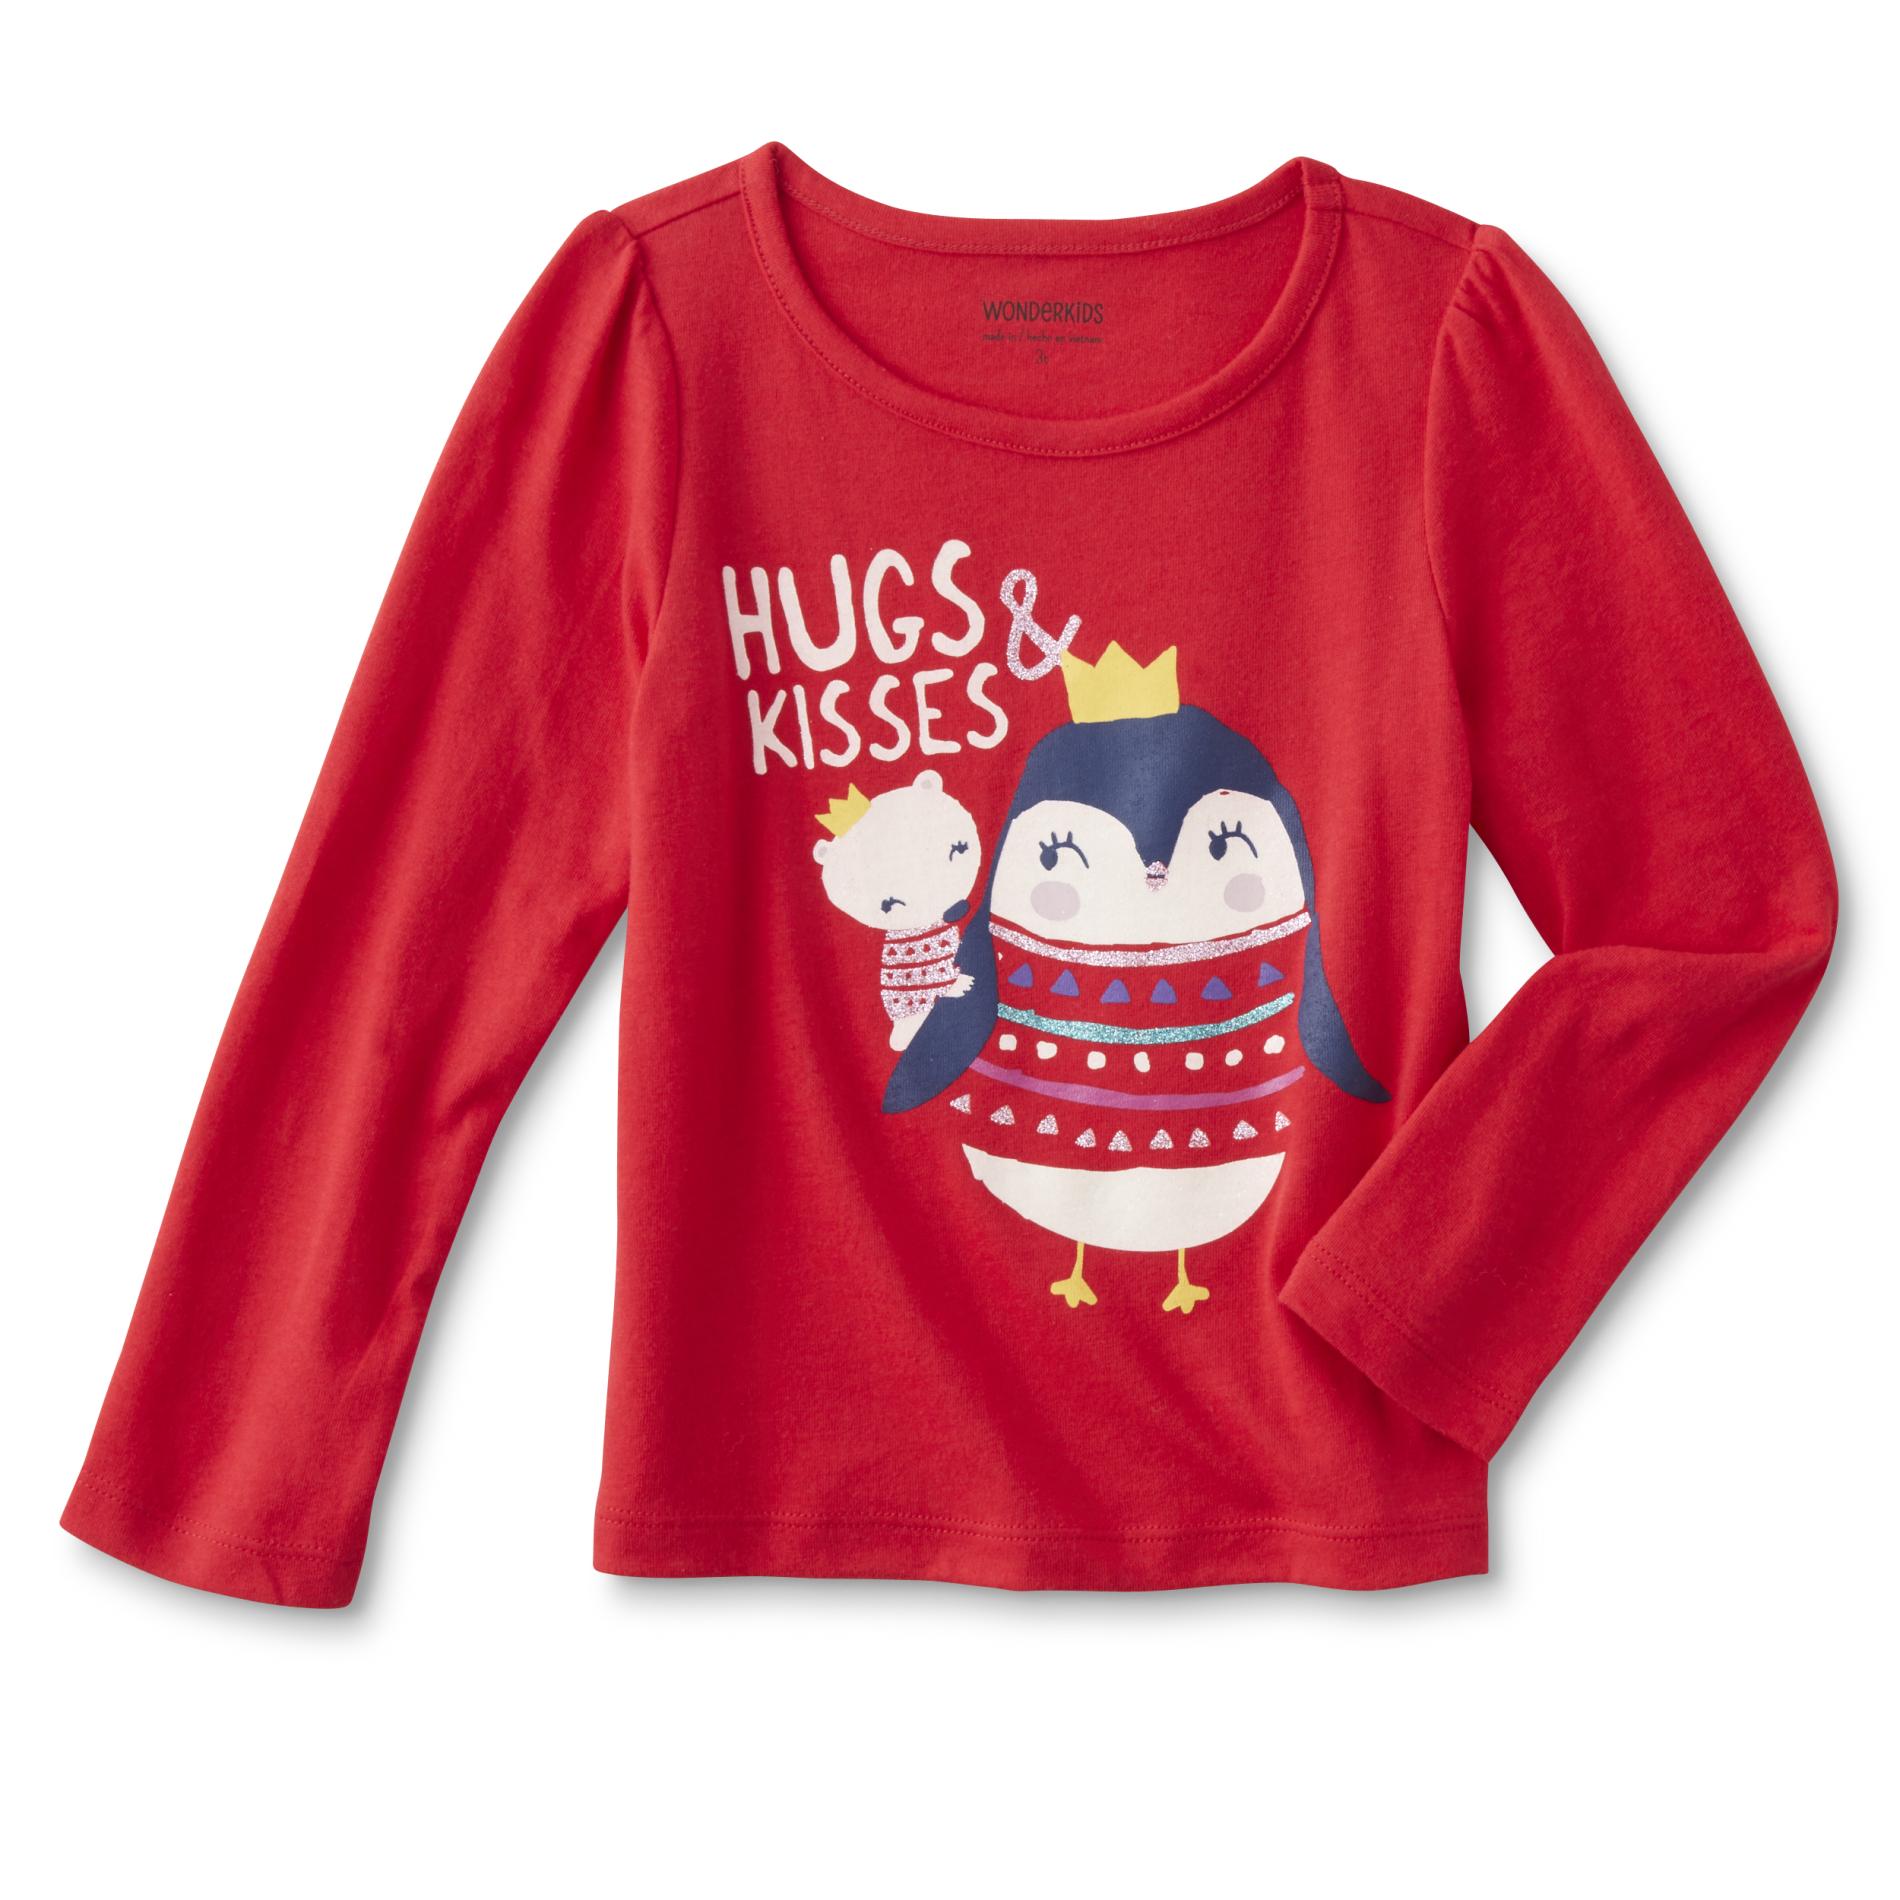 WonderKids Infant & Toddler Girl's Graphic T-Shirt - Hugs & Kisses